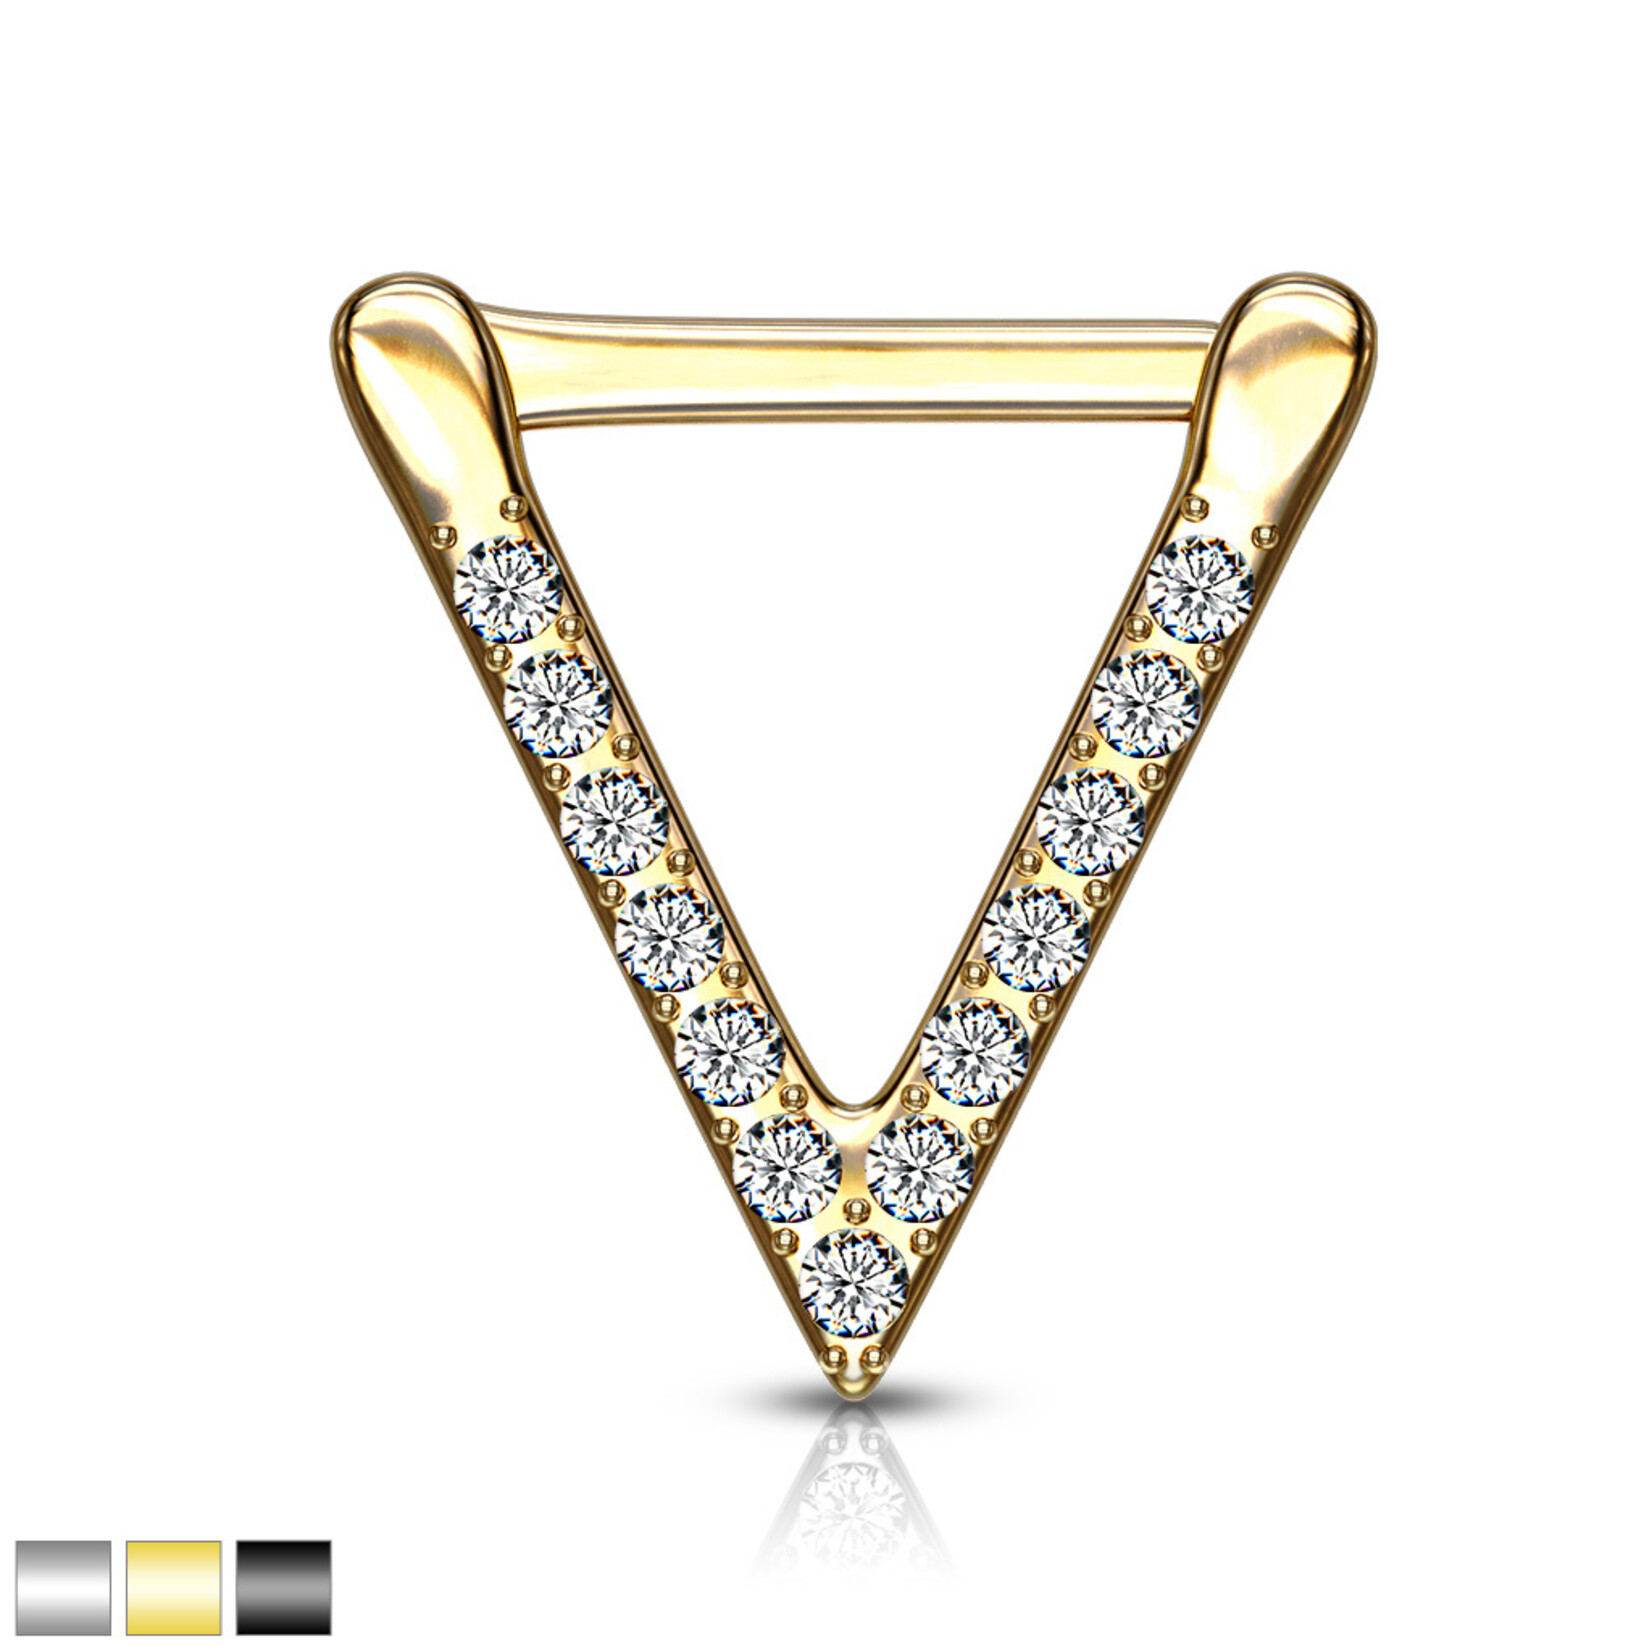 Body Jewelry SEPS-46, S.S. CZ Paved Triangle Clicker